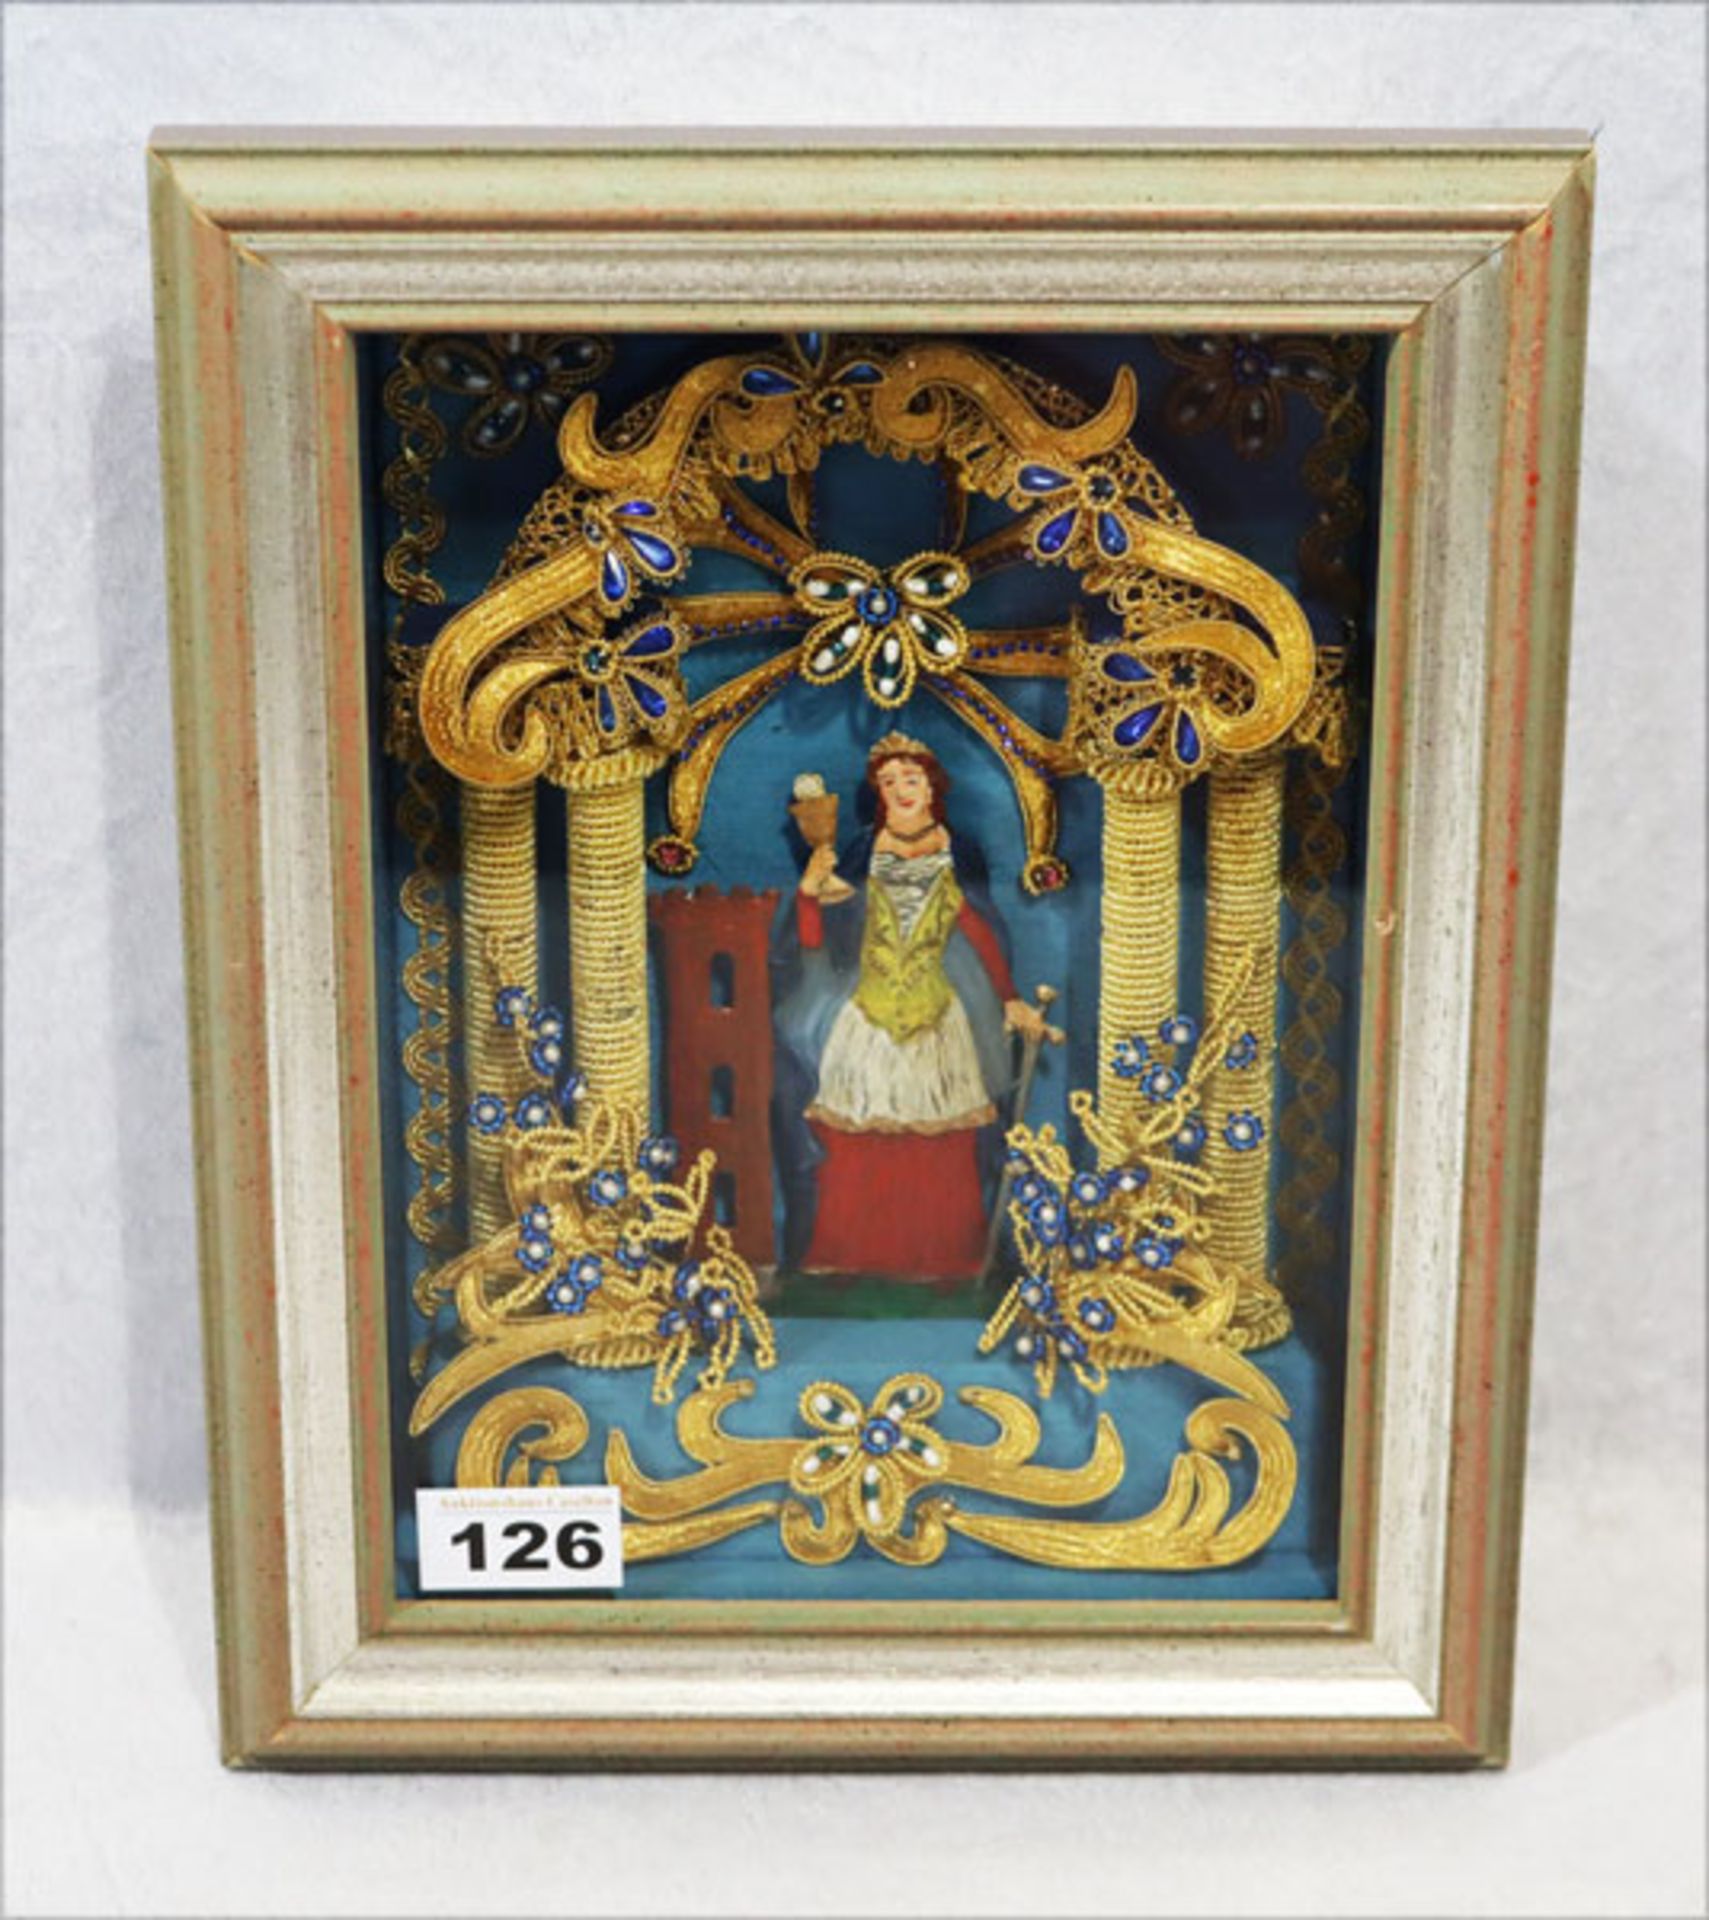 Klosterarbeit mit Zinnbild 'Heilige Barbara', reich verziert, unter Glas gerahmt, incl. Rahmen 31 cm